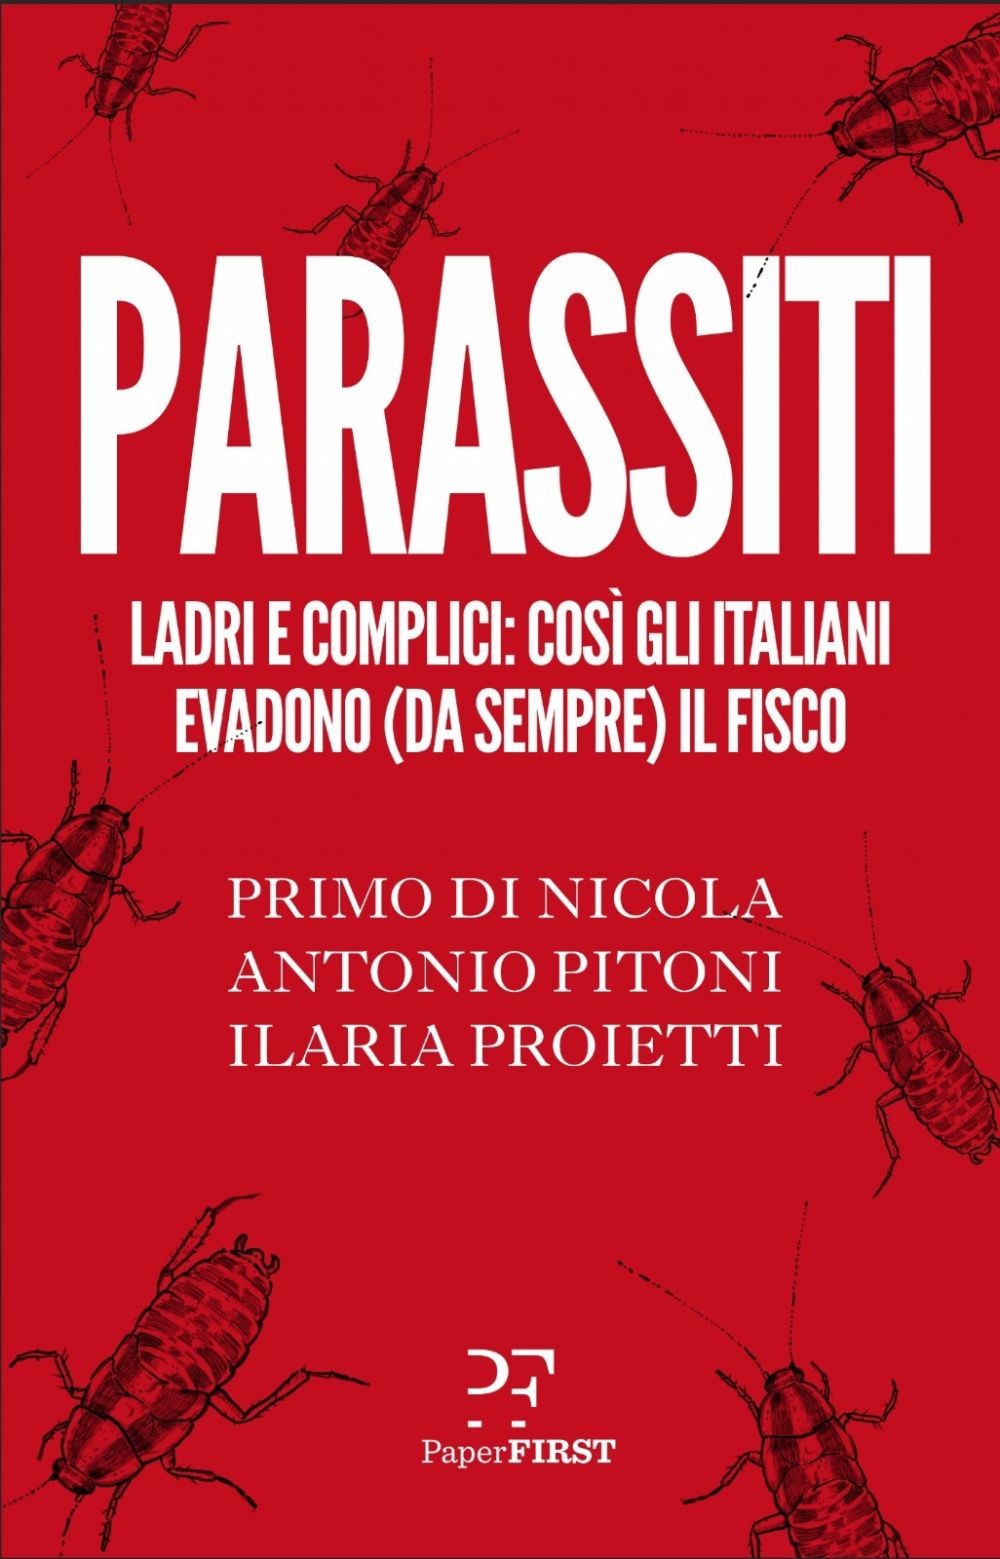 Parassiti - Librerie.coop